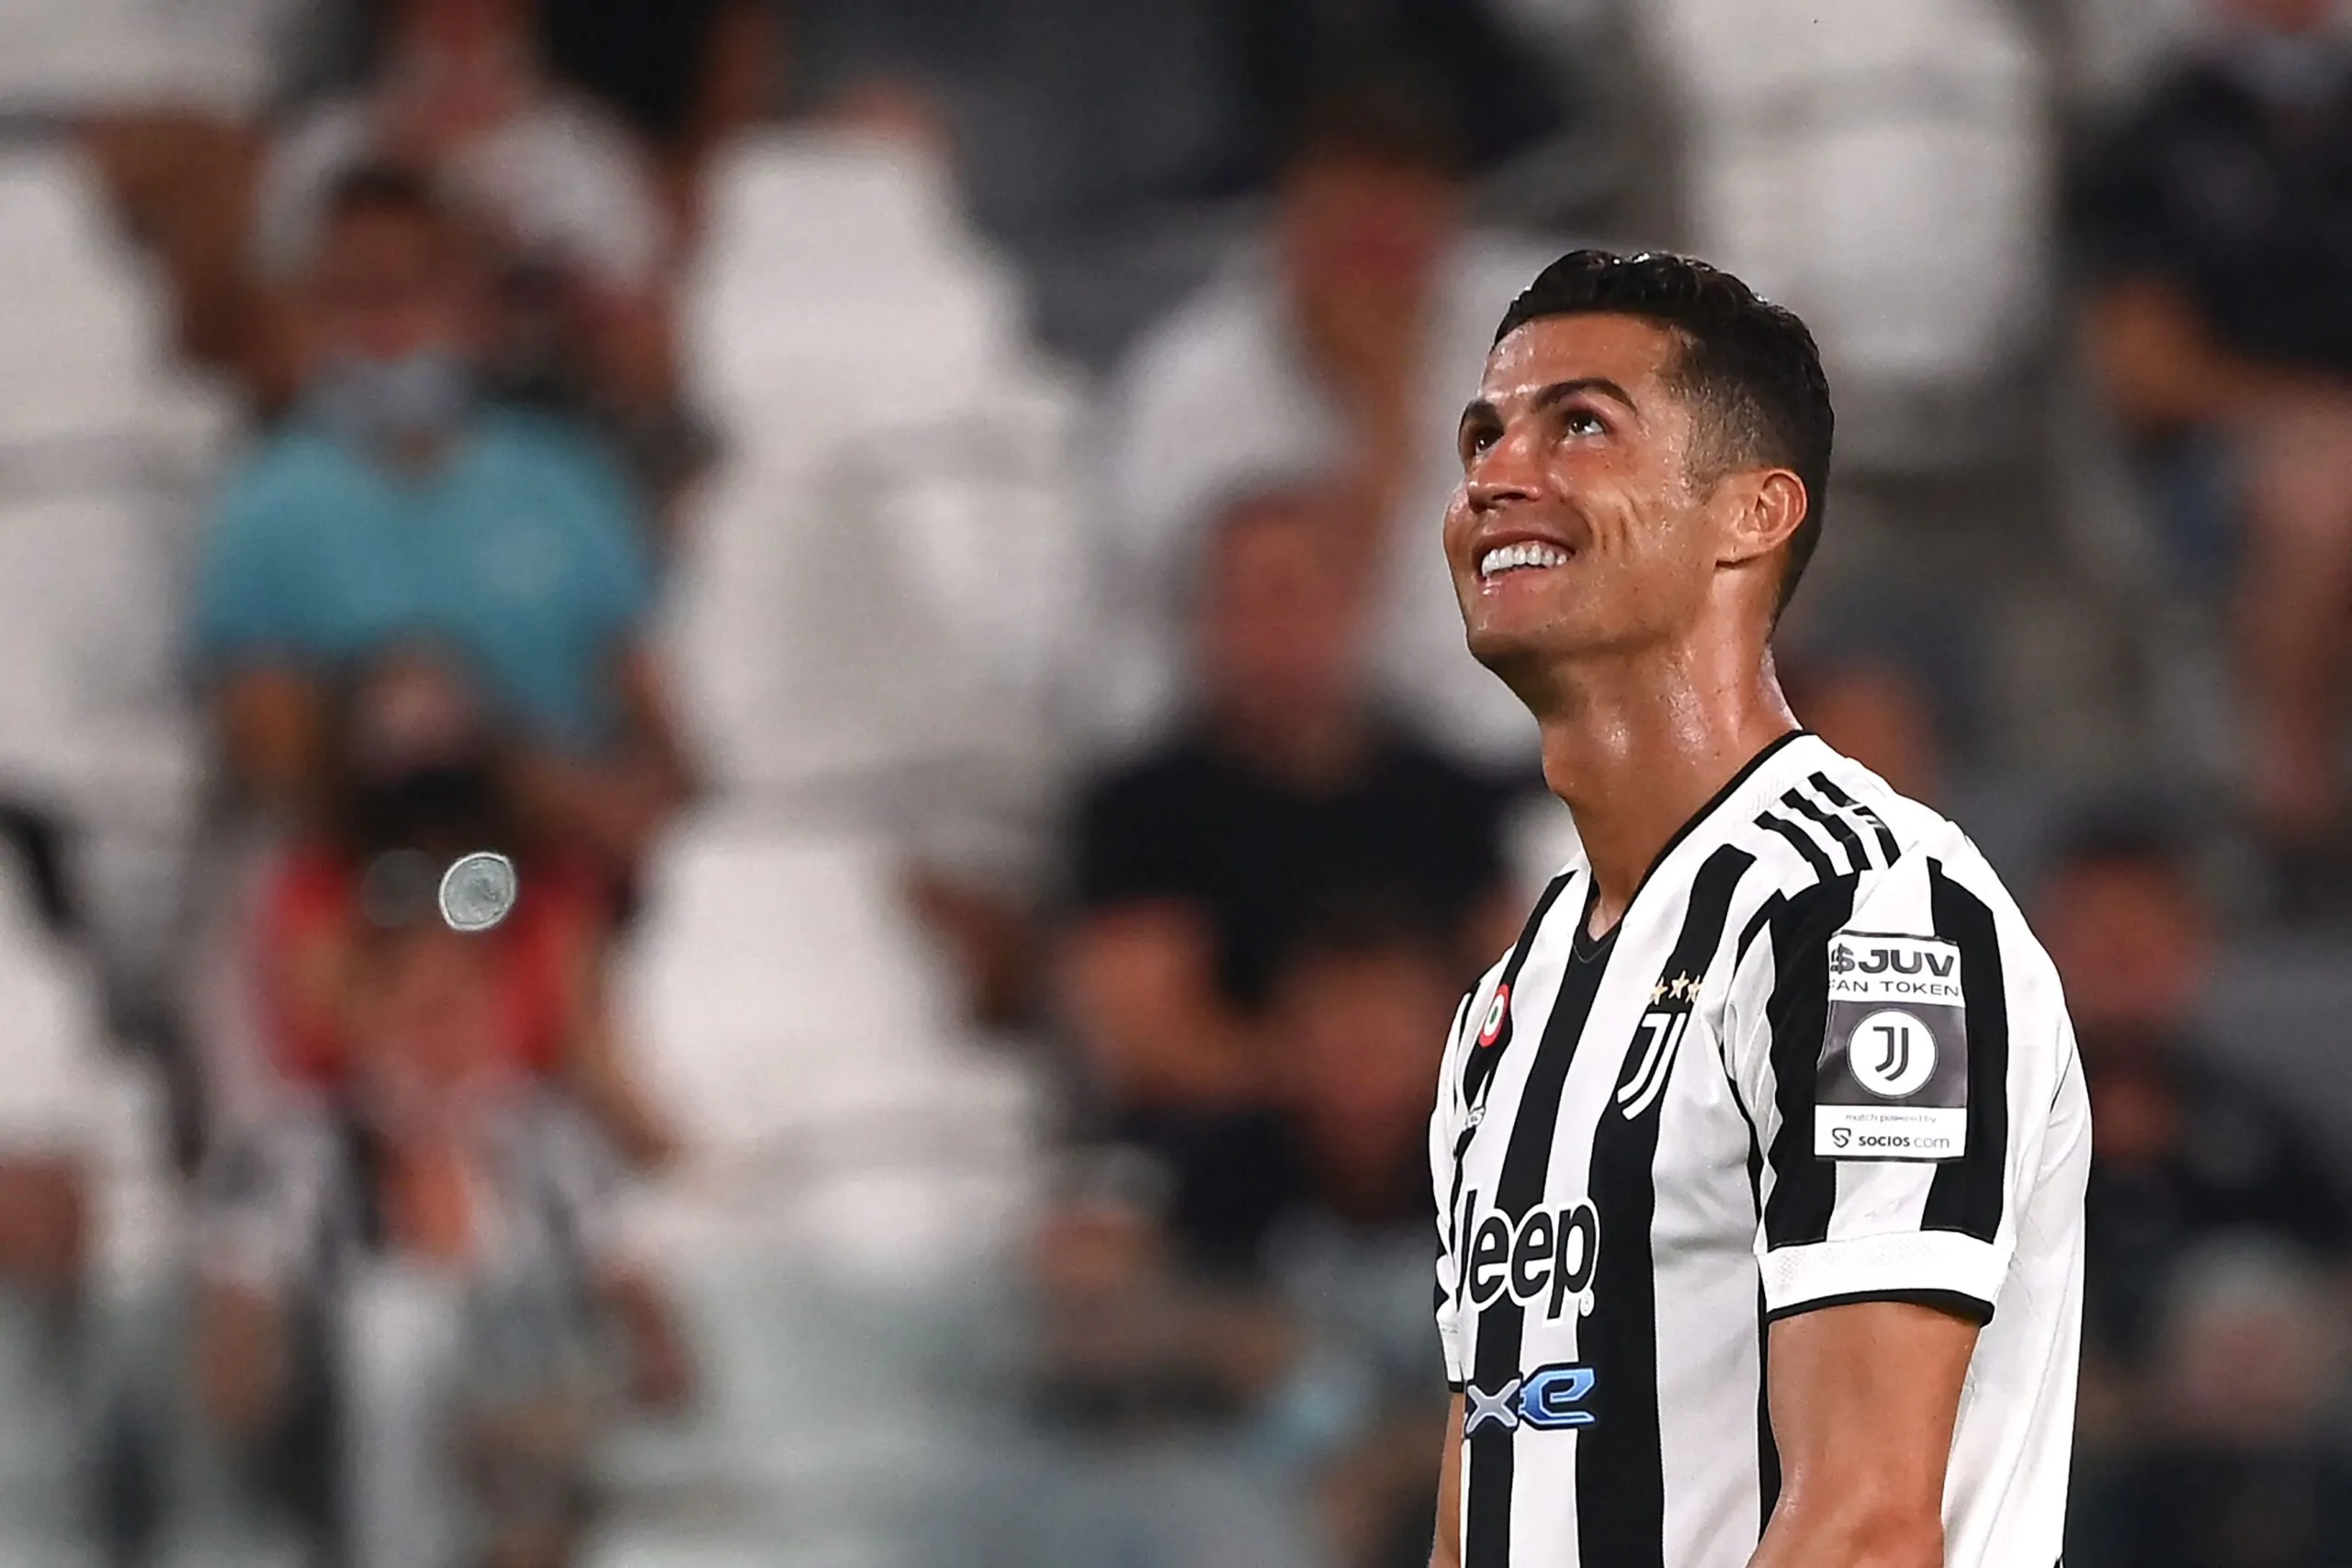 Inchiesta Prisma, novità sulla carta Ronaldo: la decisione dei pm